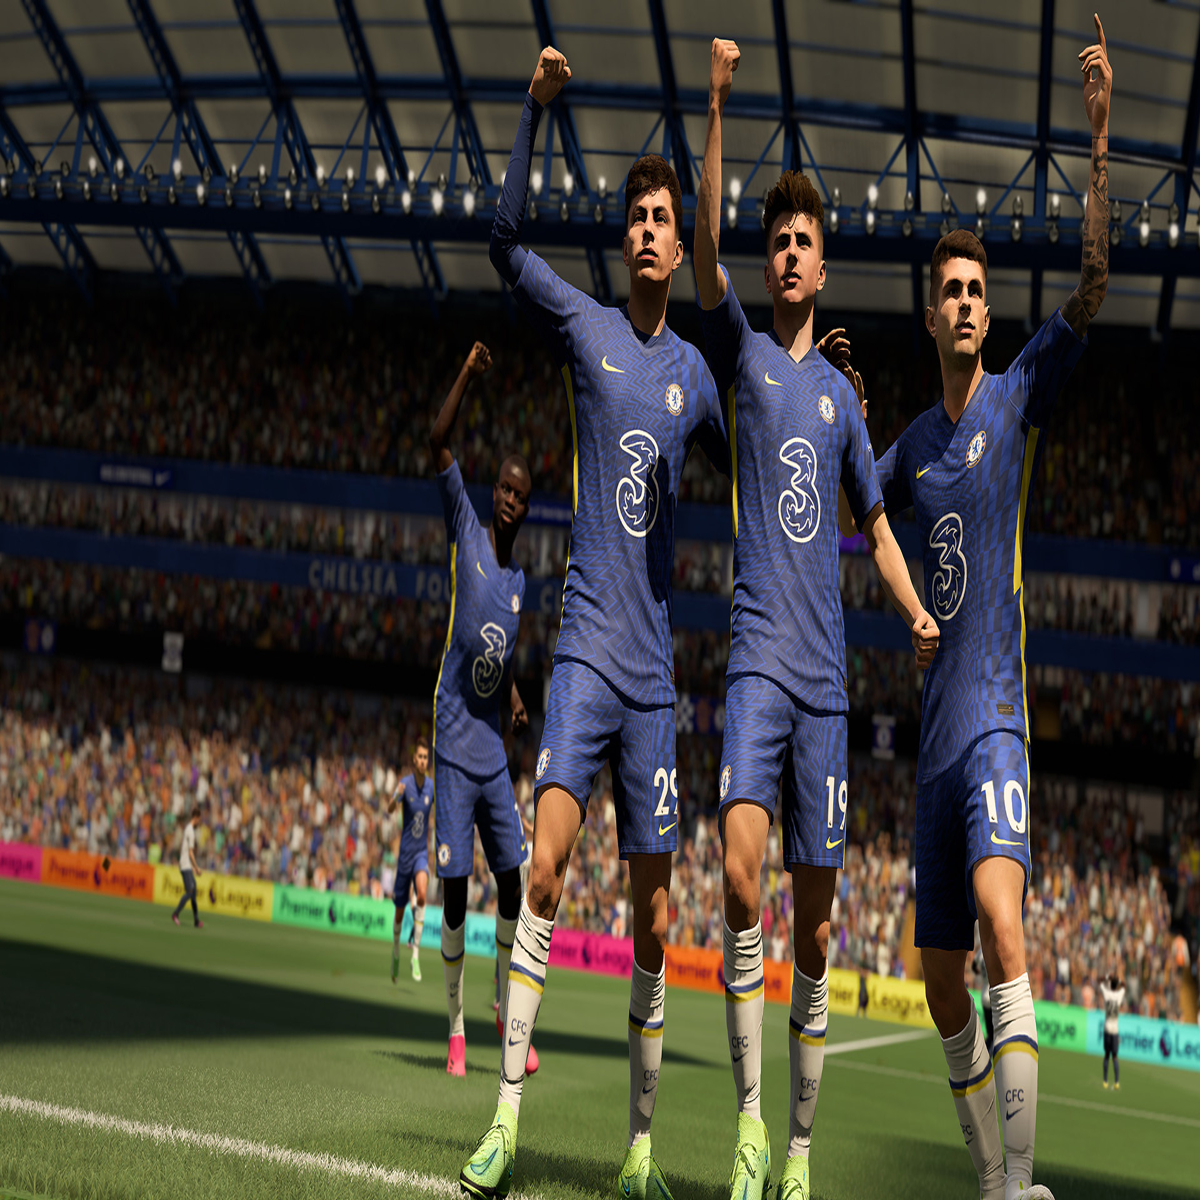 FIFA 22 remove times, estádios e itens customizados com referência à Rússia